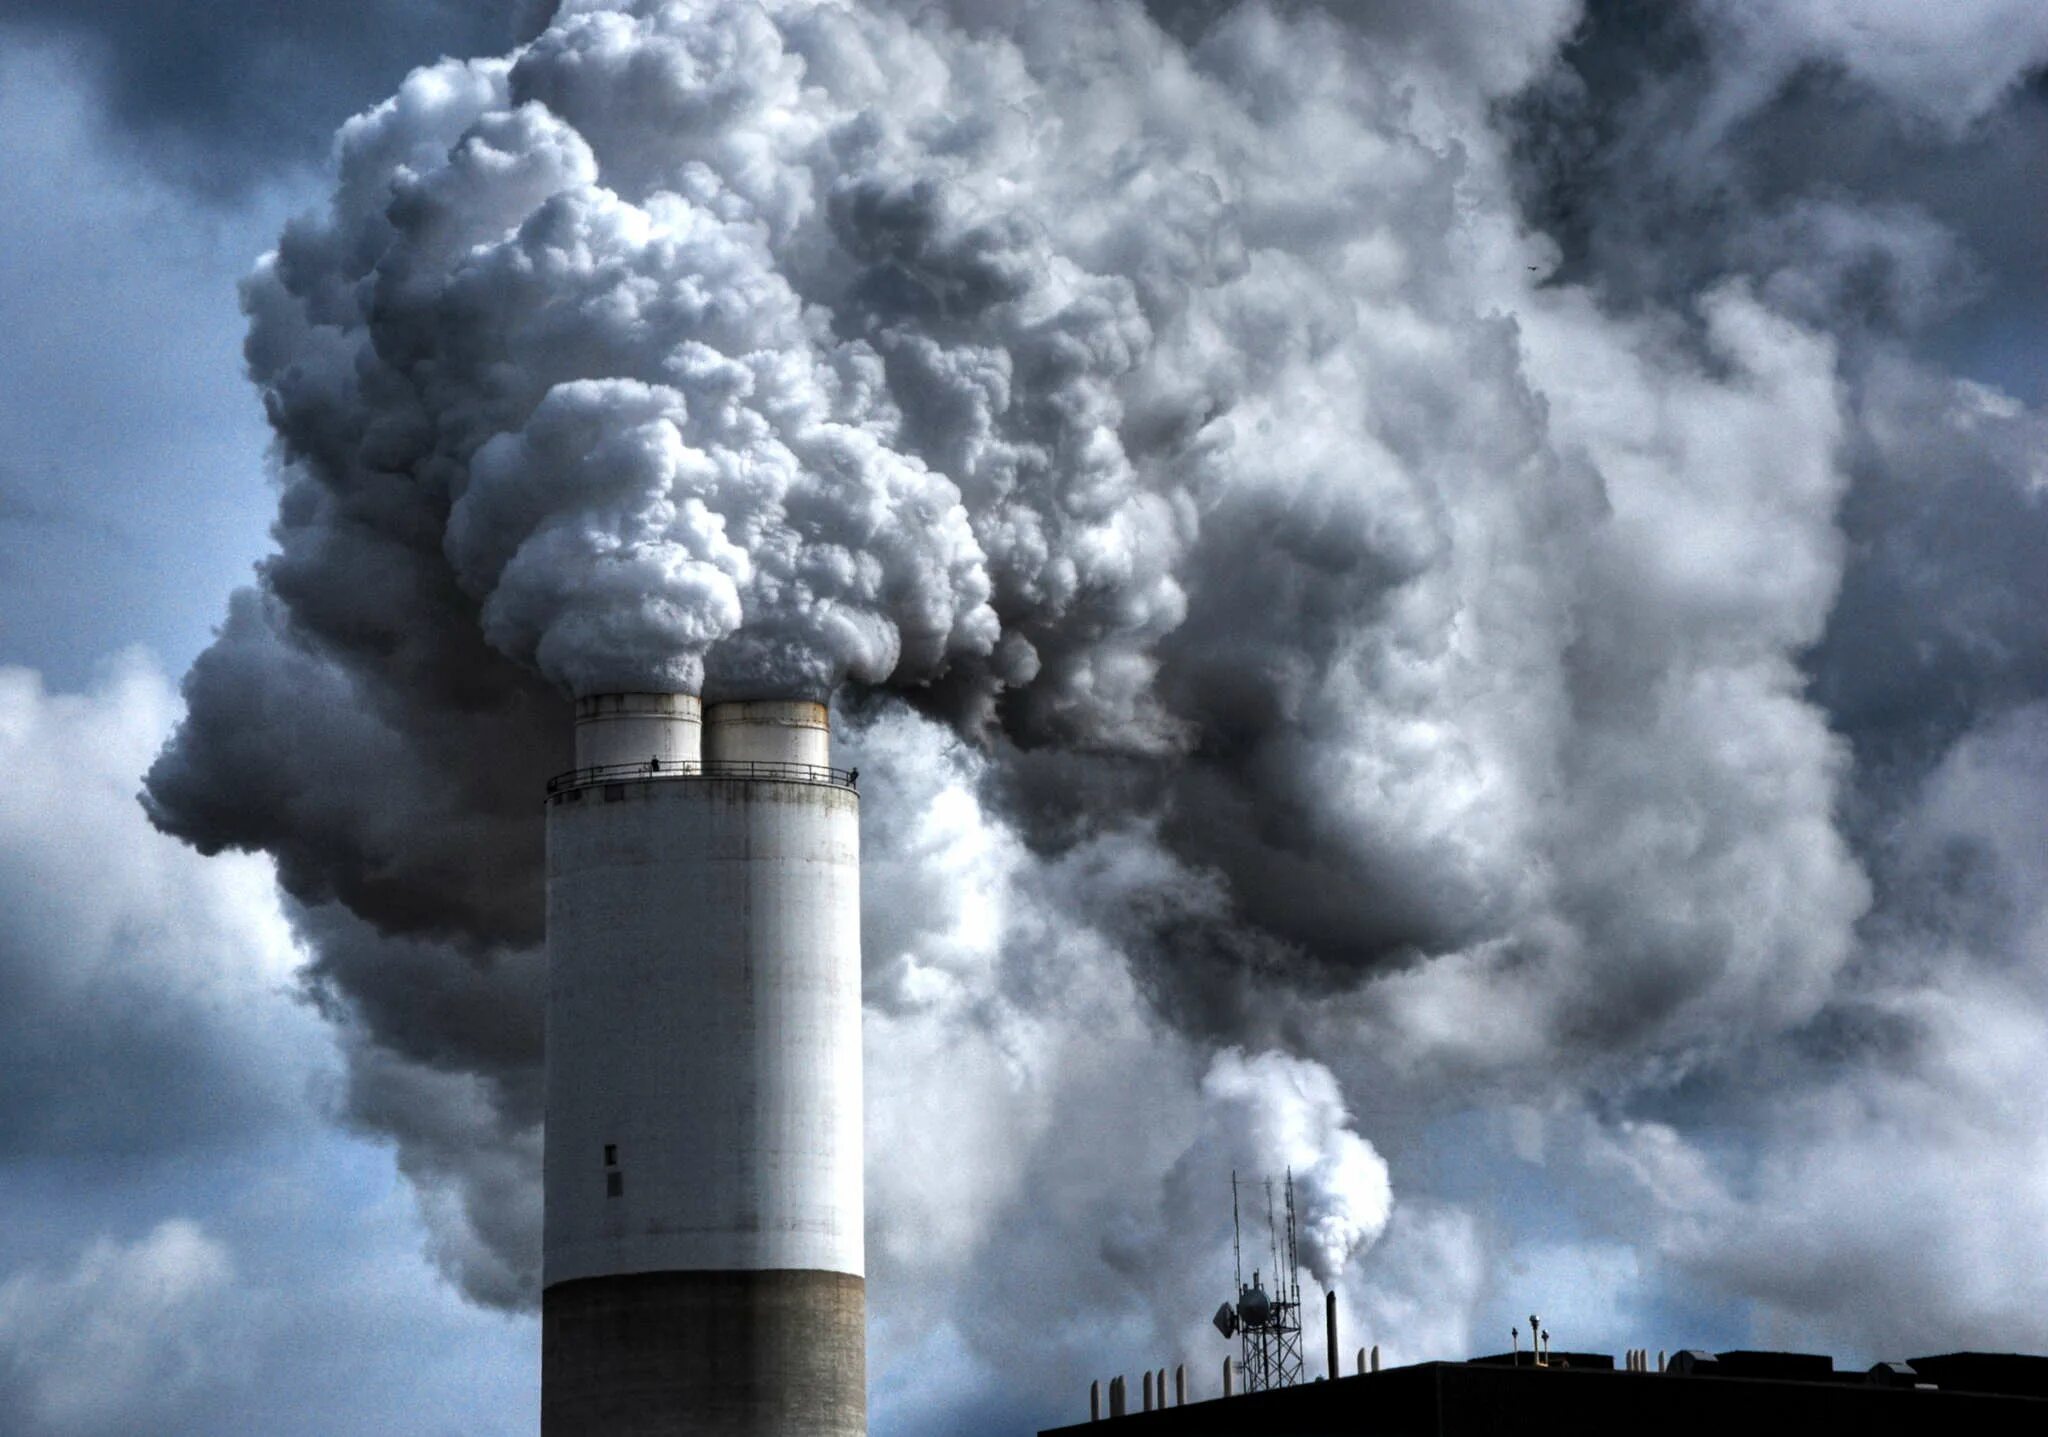 Примеси газов в воздухе. Выбросы в атмосферу. Загрязнение воздуха. Выбросы в атмосферу загрязняющих веществ. Выбросы загрязняющих веществ в атмосферный воздух.